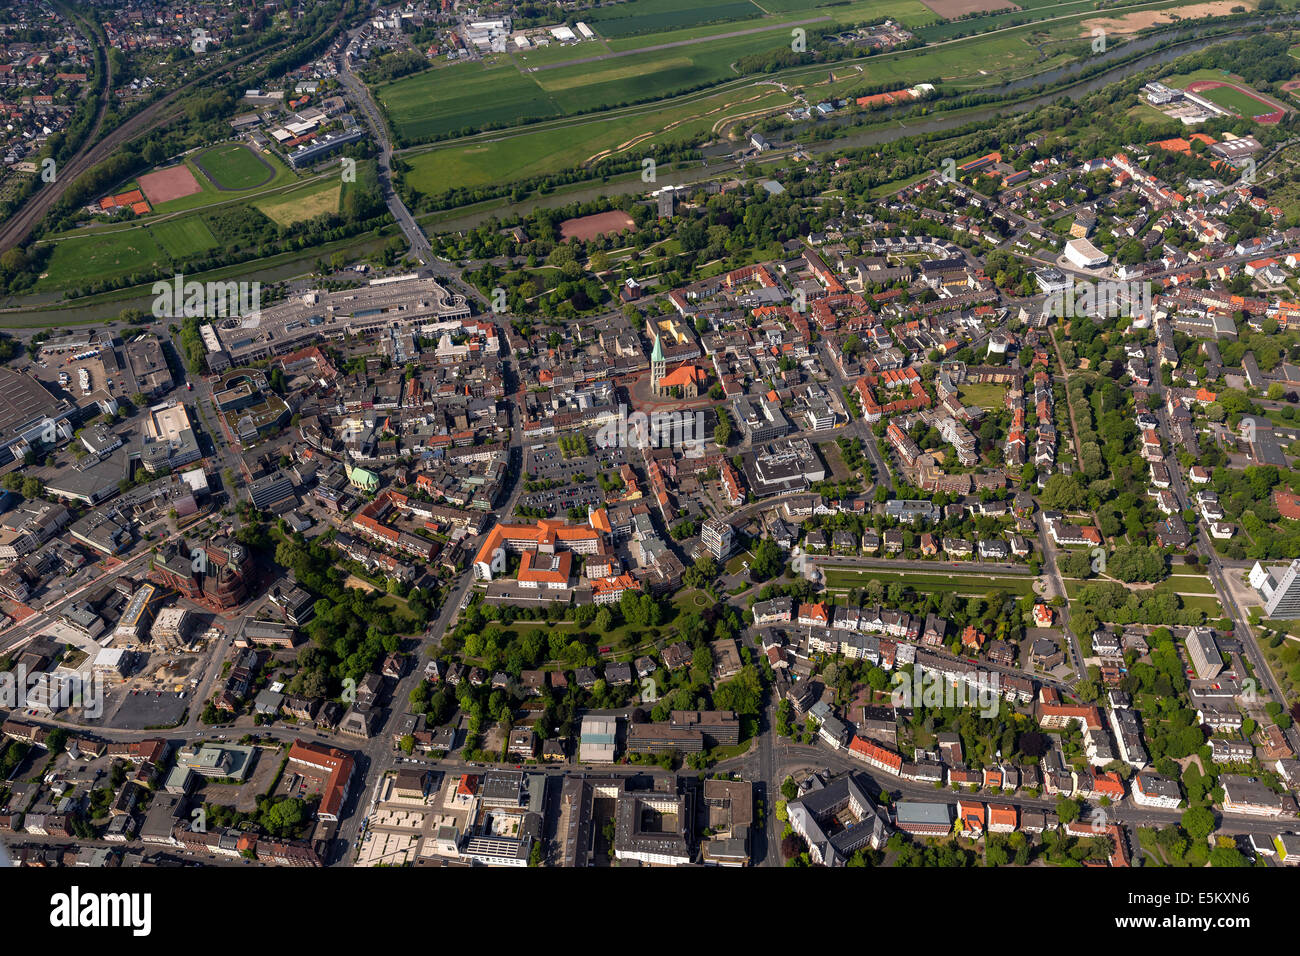 Vista aérea, cinturón verde alrededor de Hamm, districto de Ruhr, Renania del Norte-Westfalia, Alemania Foto de stock